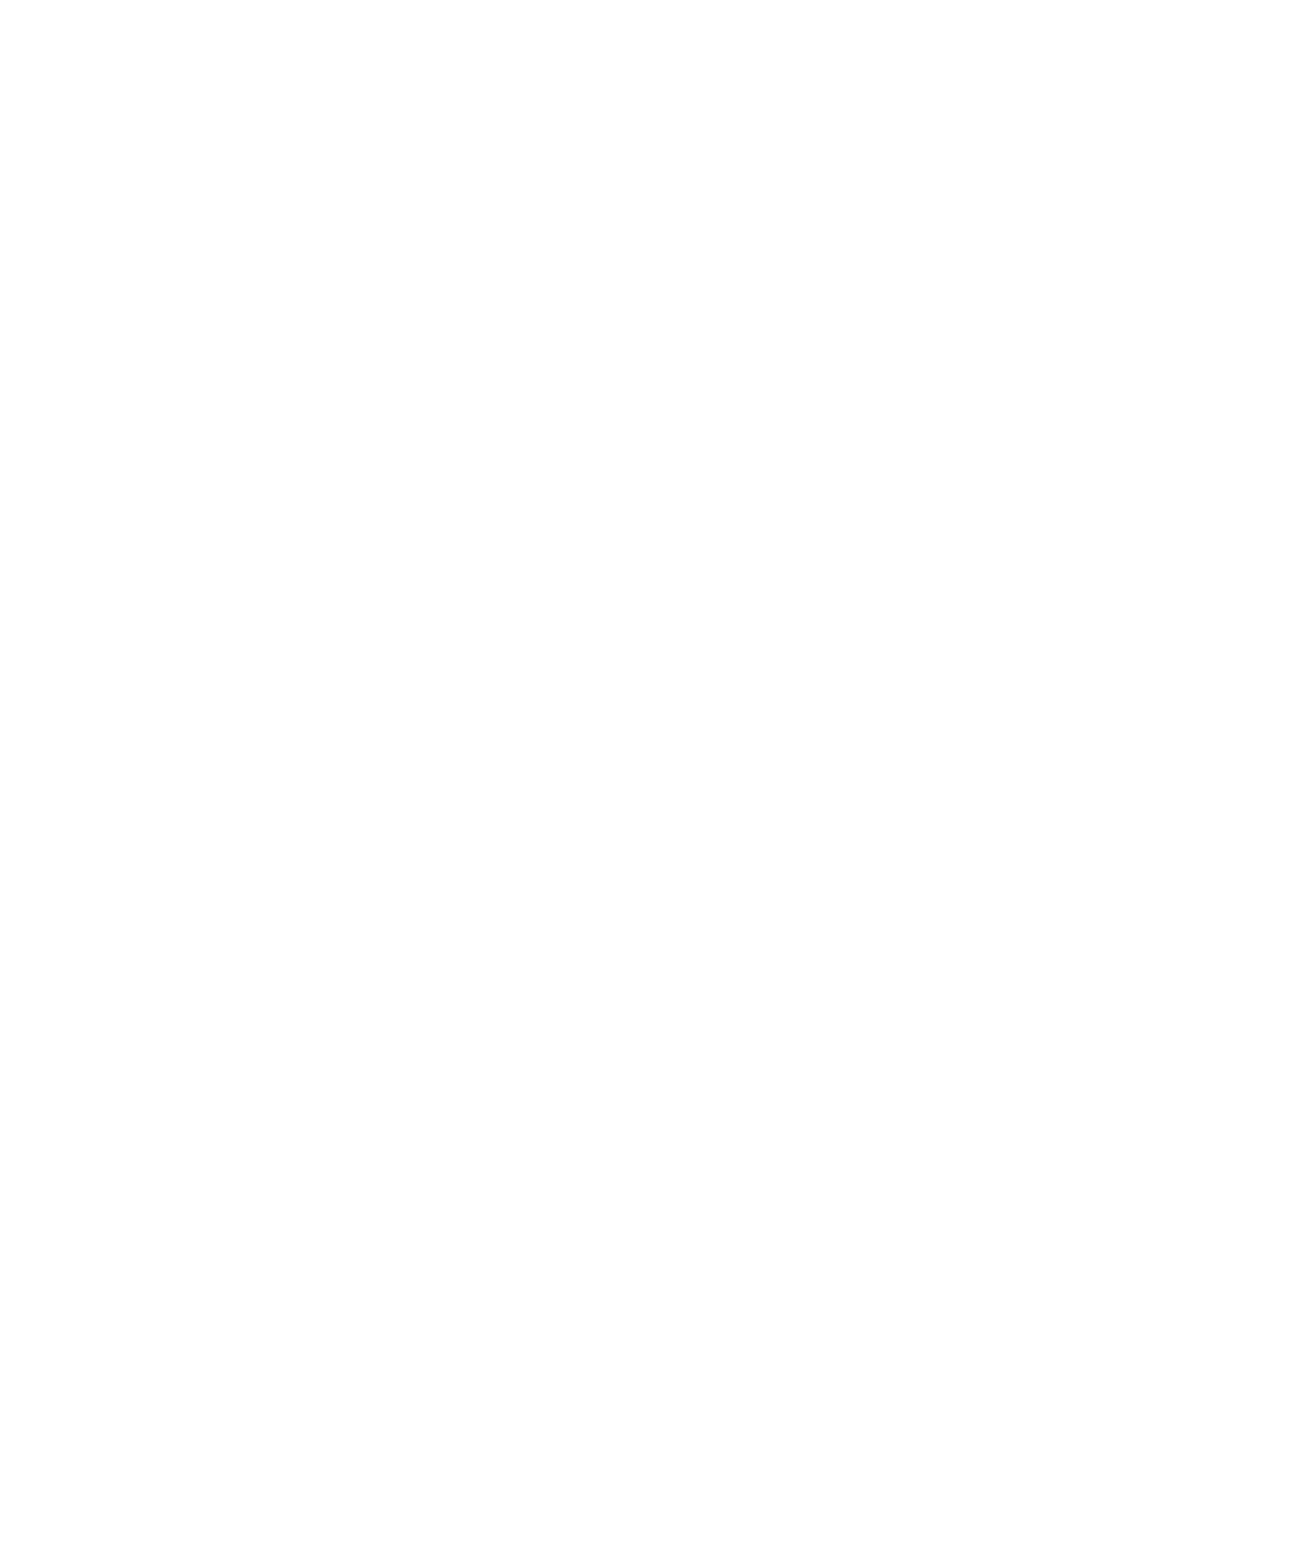 Scatec ASA logo pour fonds sombres (PNG transparent)